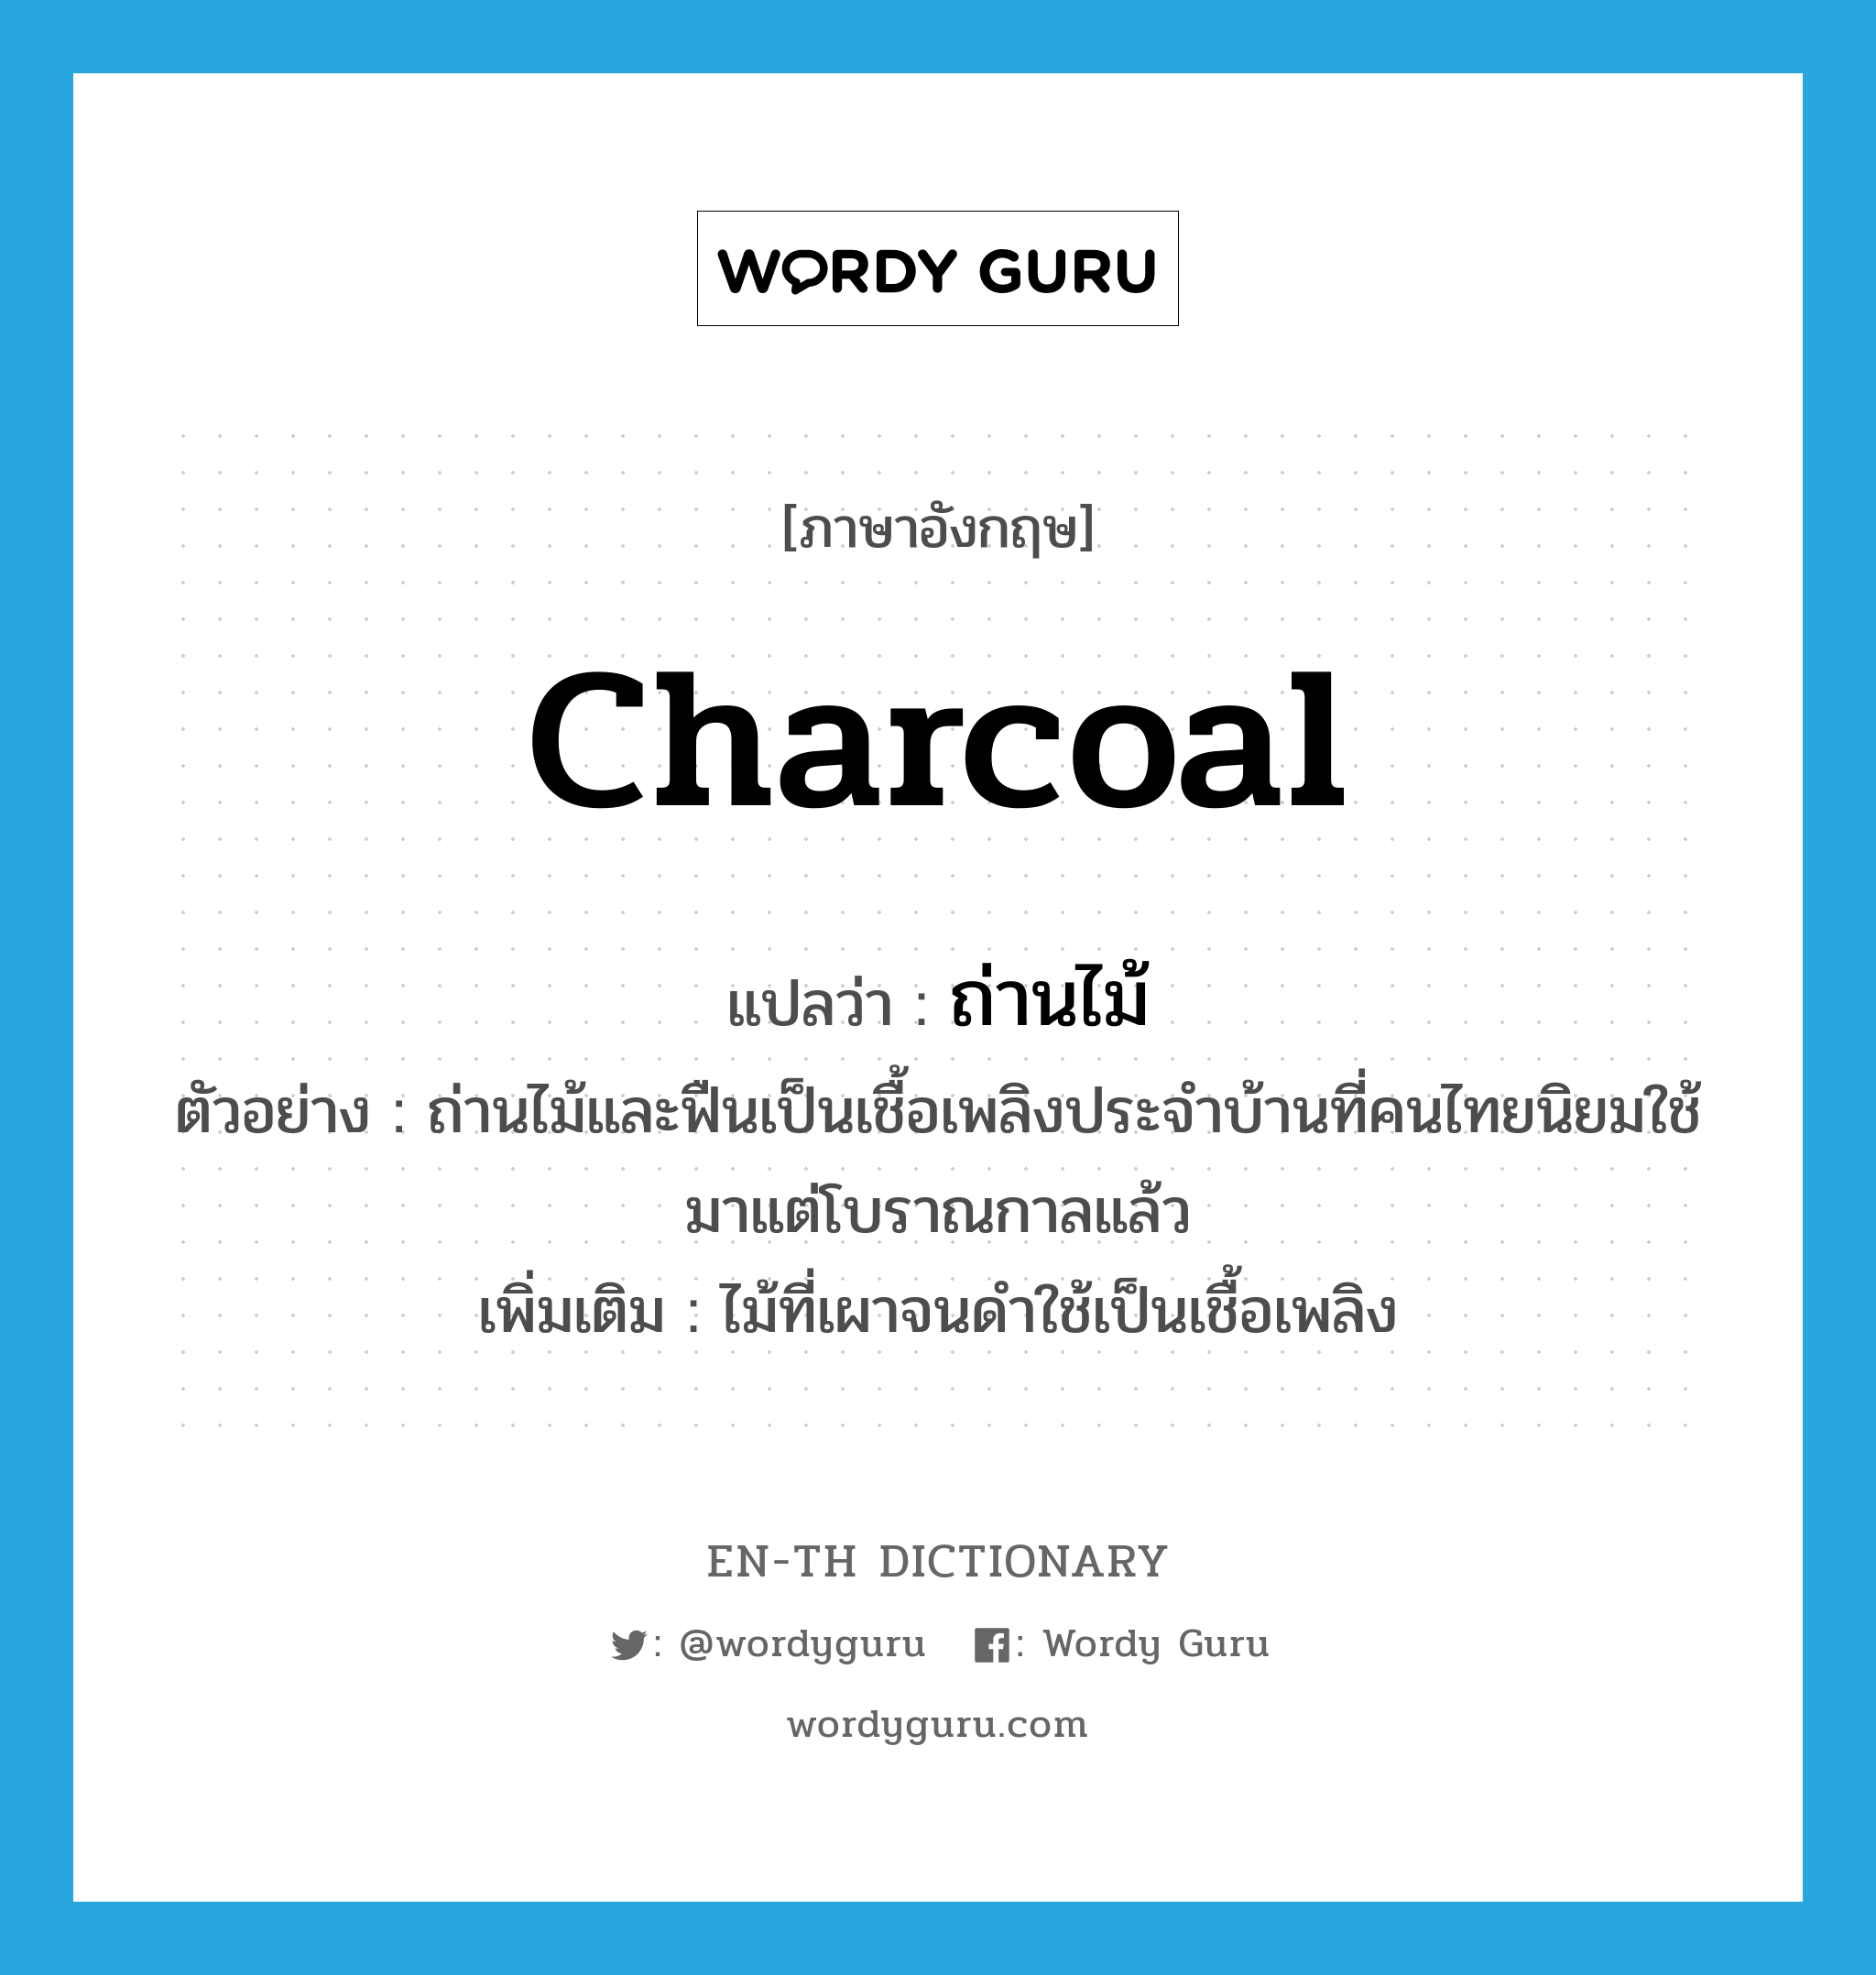 ถ่านไม้ ภาษาอังกฤษ?, คำศัพท์ภาษาอังกฤษ ถ่านไม้ แปลว่า charcoal ประเภท N ตัวอย่าง ถ่านไม้และฟืนเป็นเชื้อเพลิงประจำบ้านที่คนไทยนิยมใช้มาแต่โบราณกาลแล้ว เพิ่มเติม ไม้ที่เผาจนดำใช้เป็นเชื้อเพลิง หมวด N